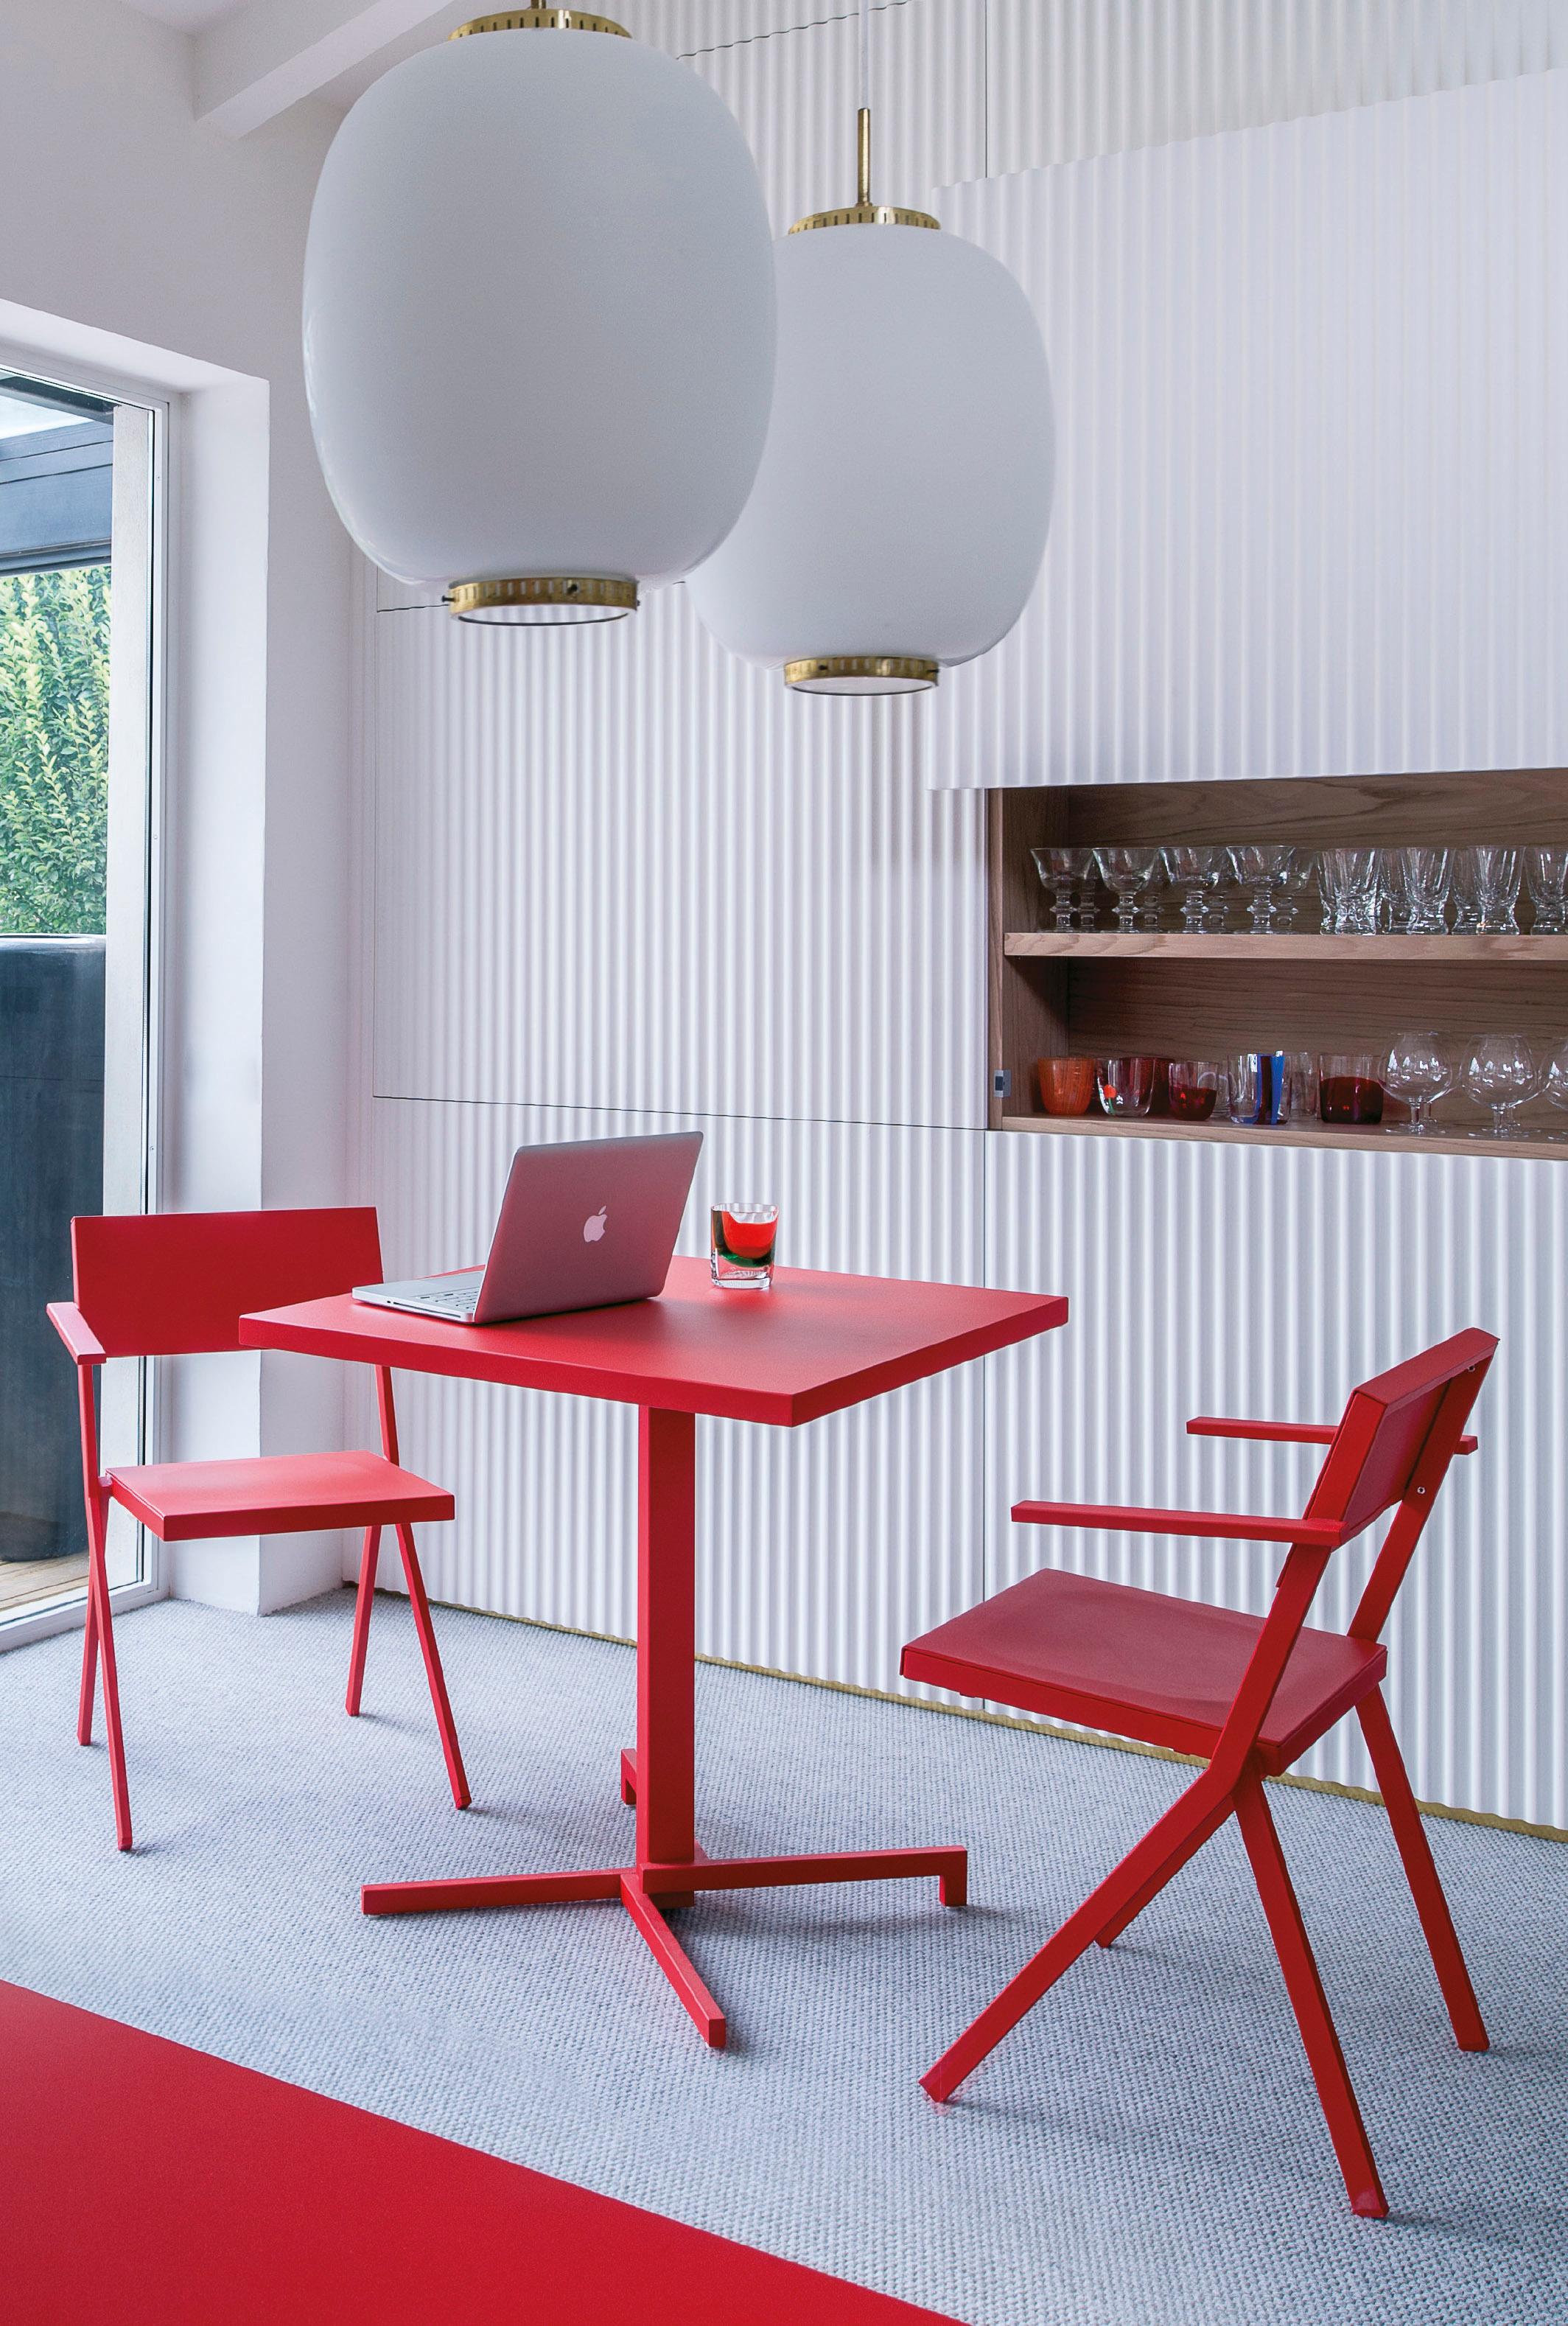 Rote Möbel im Esszimmer #lampion #weihnachtsdeko #zimmergestaltung ©Emu, Designer: Jean Nouvel